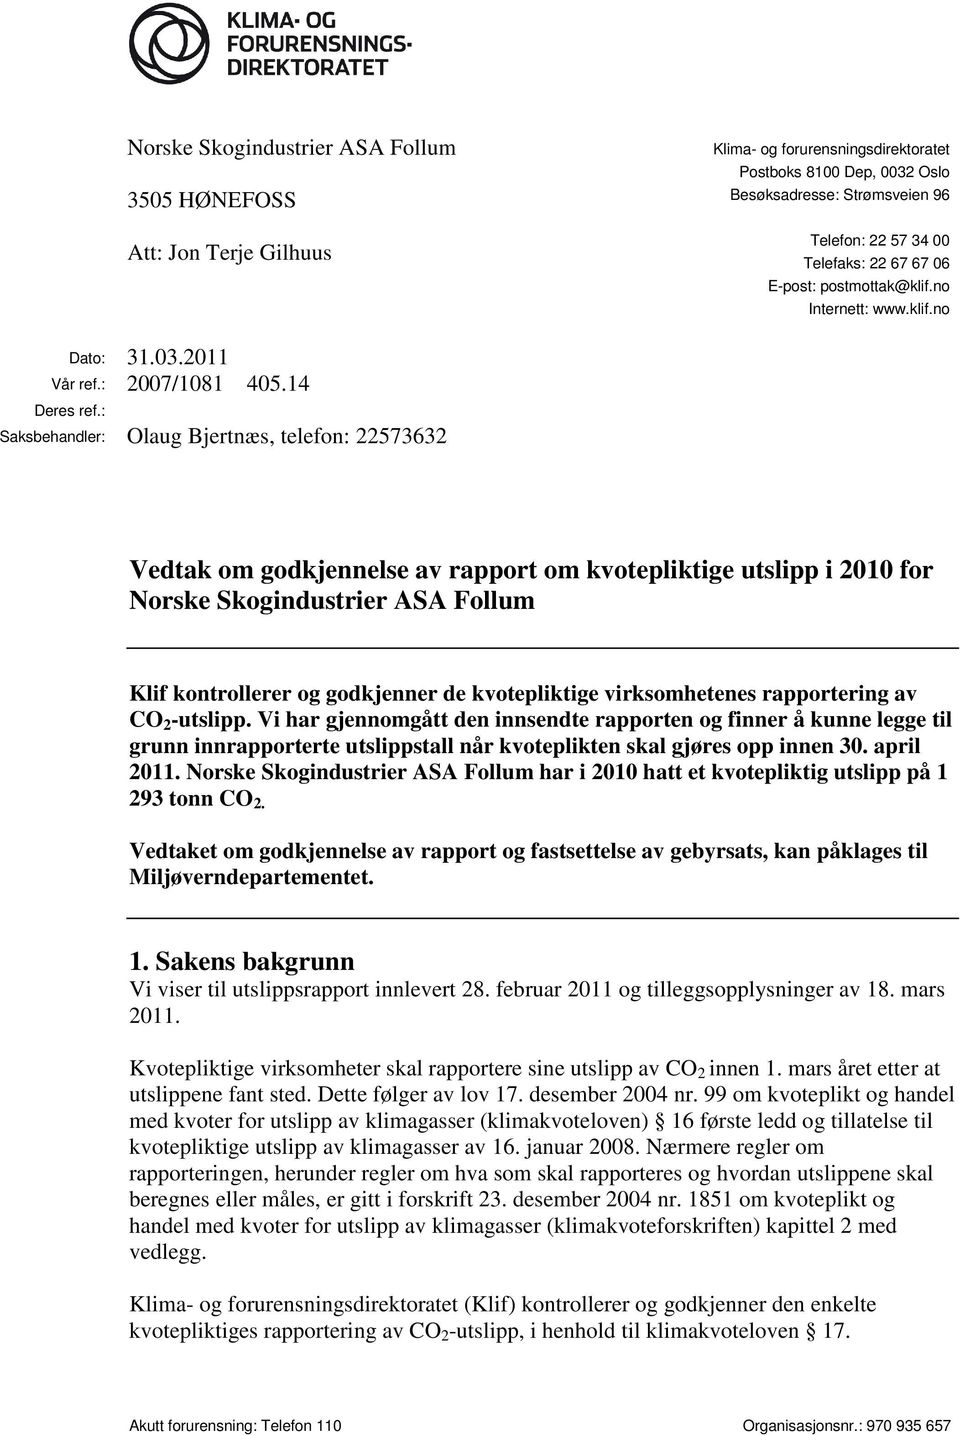 : Saksbehandler: Olaug Bjertnæs, telefon: 22573632 Vedtak om godkjennelse av rapport om kvotepliktige utslipp i 2010 for Norske Skogindustrier ASA Follum Klif kontrollerer og godkjenner de